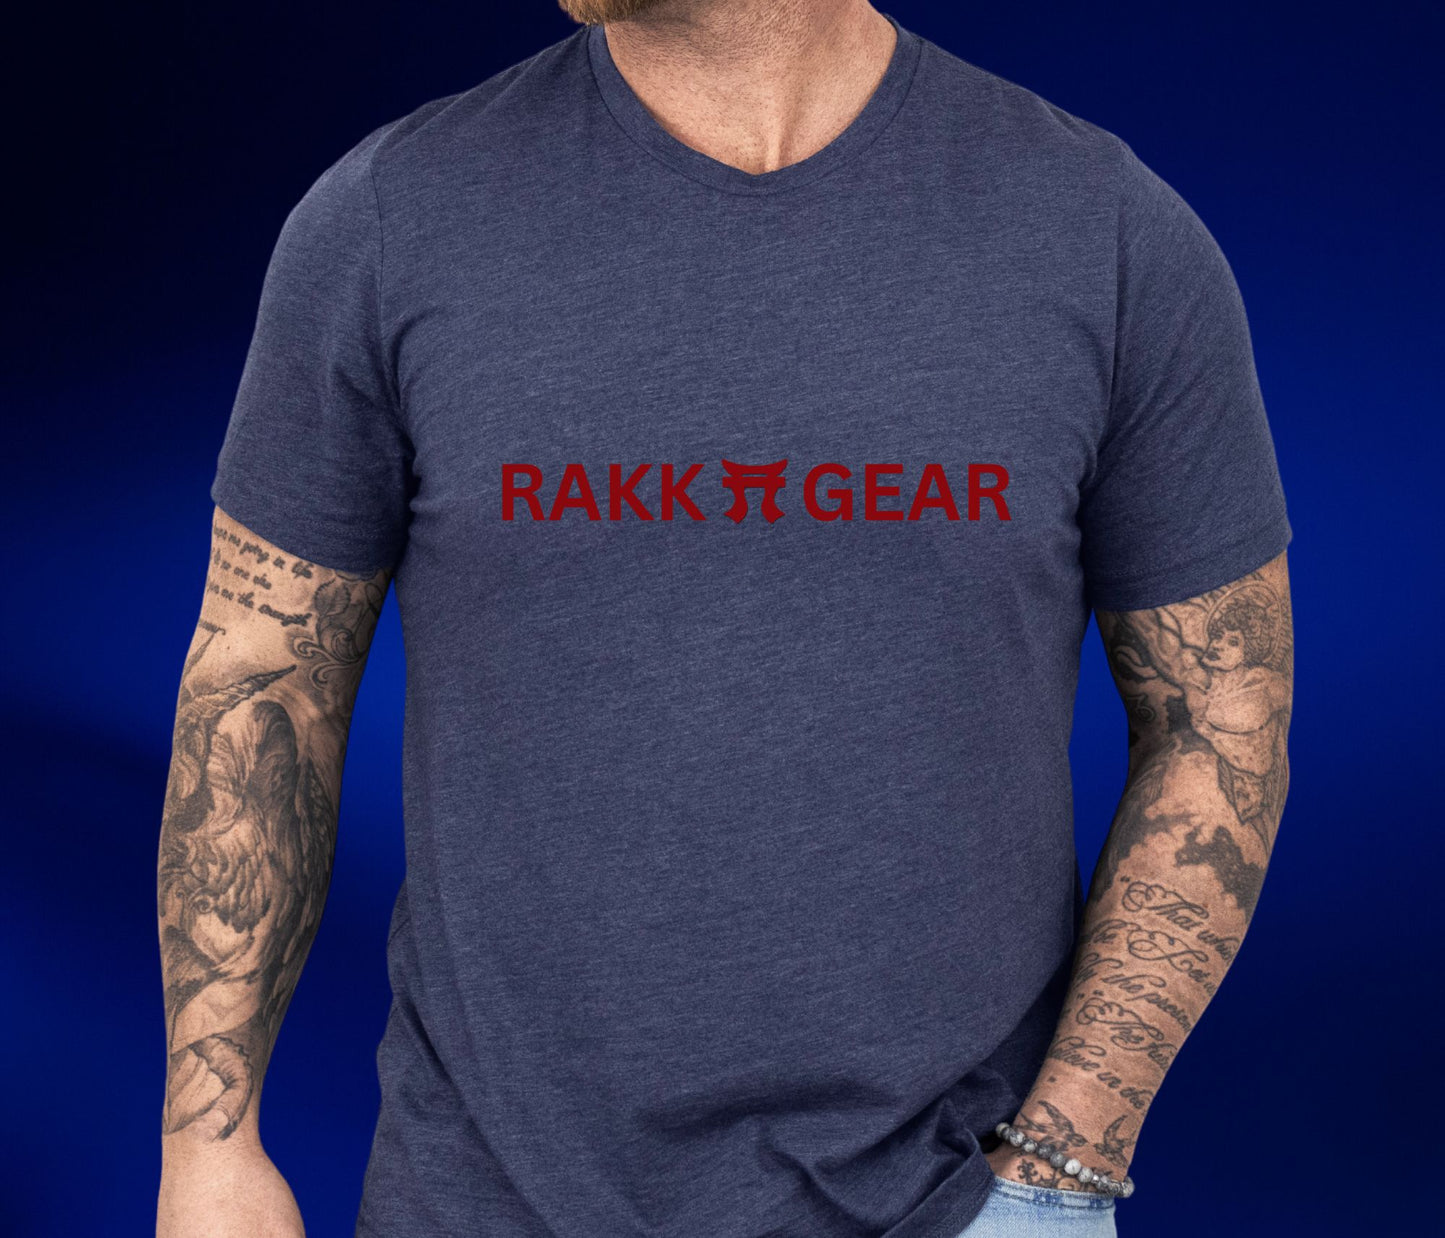 Rakkgear Logo Short Sleeve Tee in navy blue